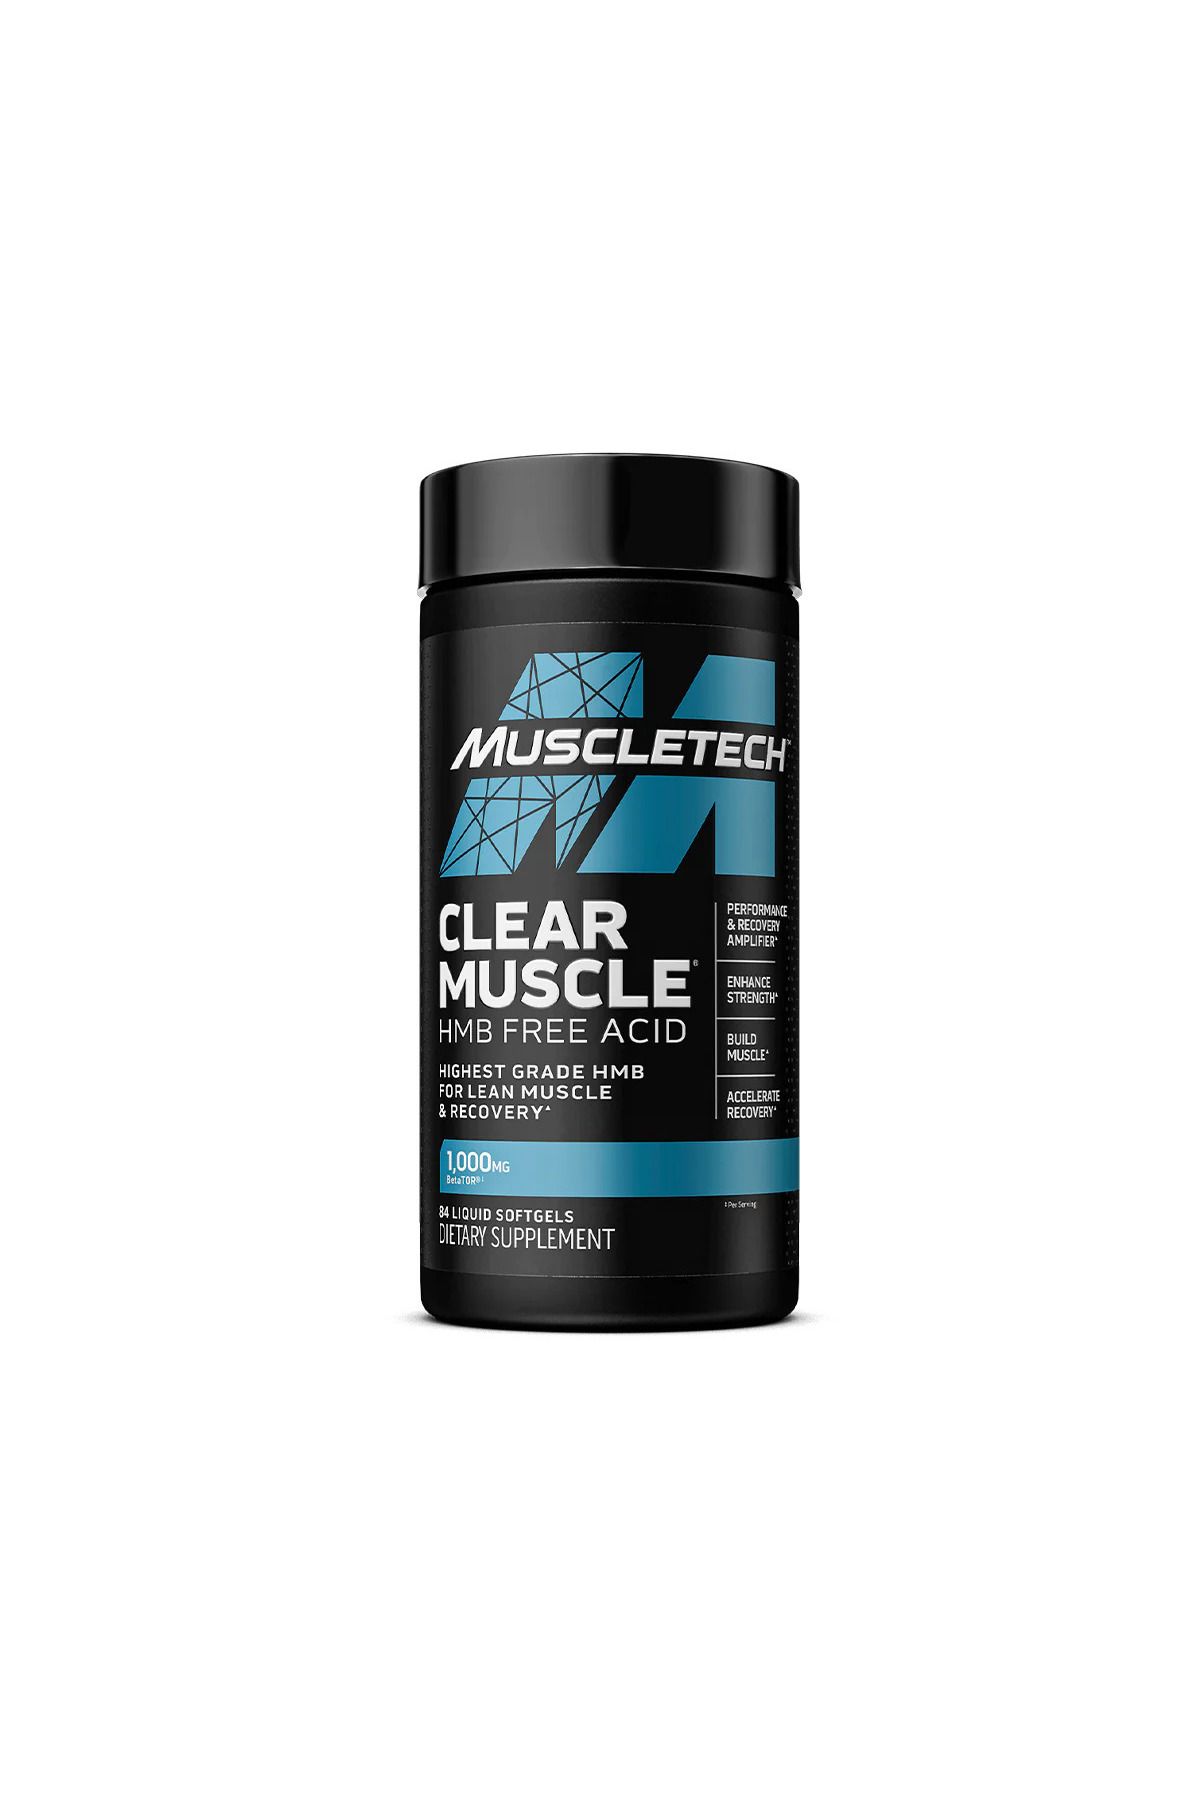 Muscletech Clear Muscle HMB Free Acid 84